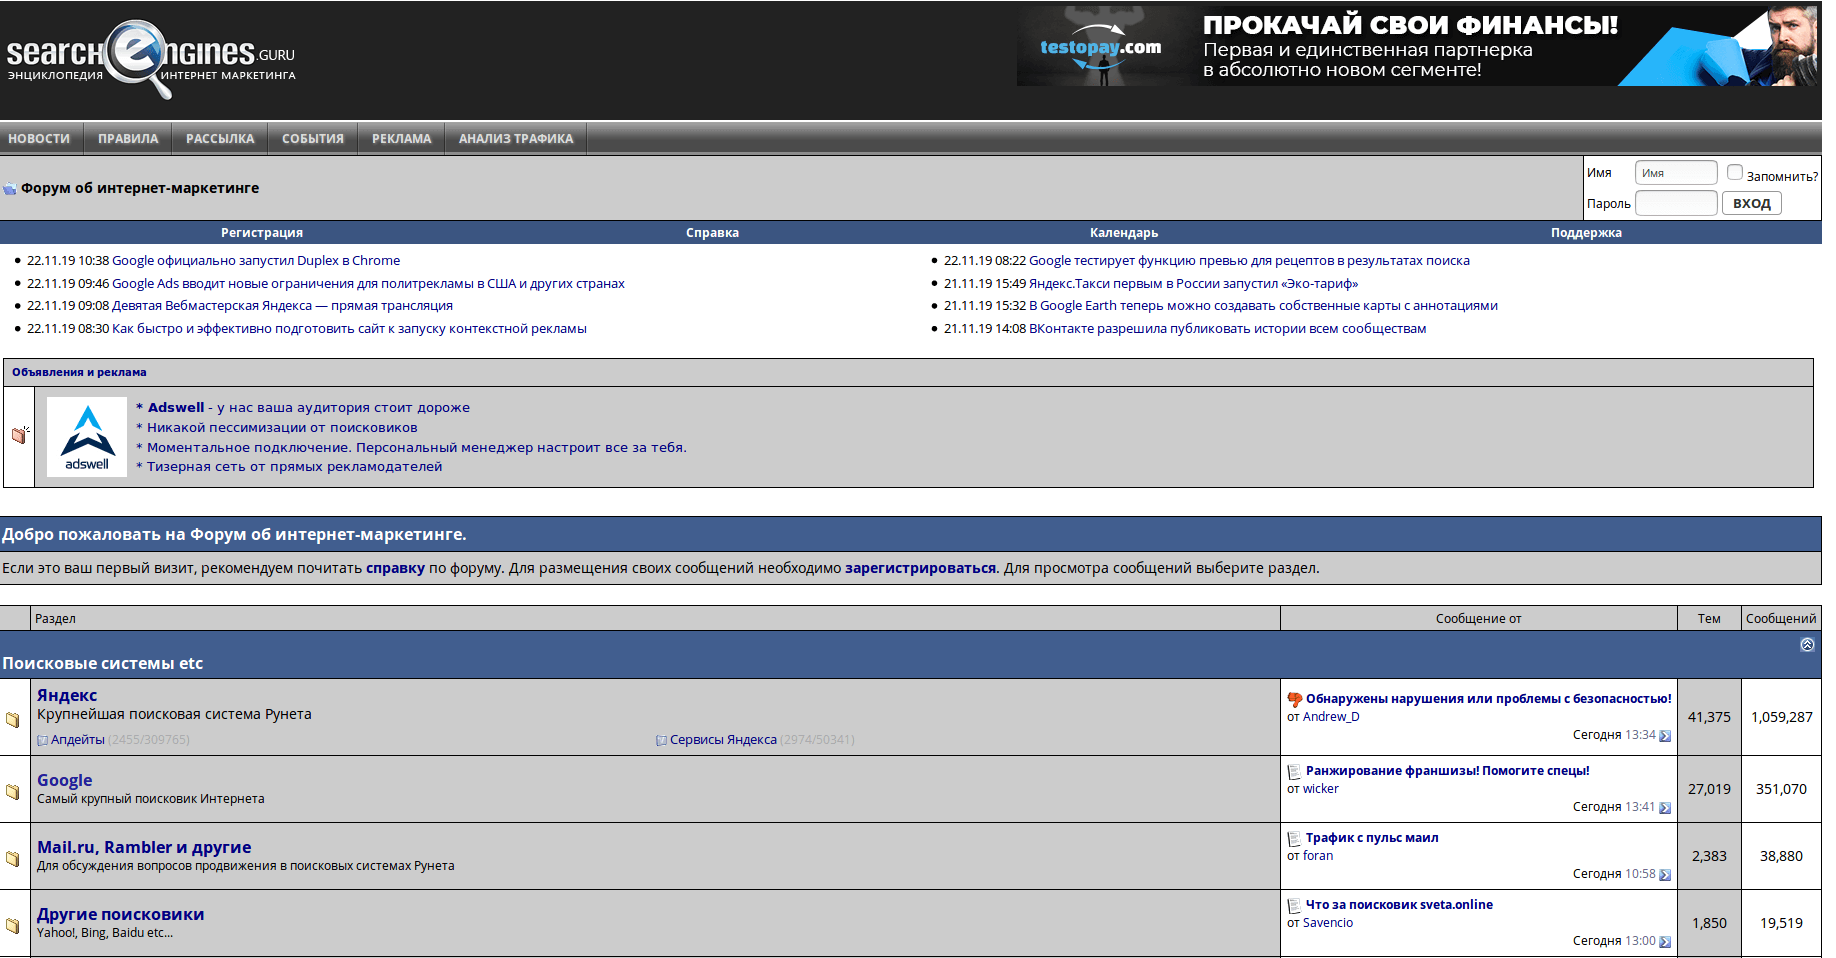 Пример сайта-форума